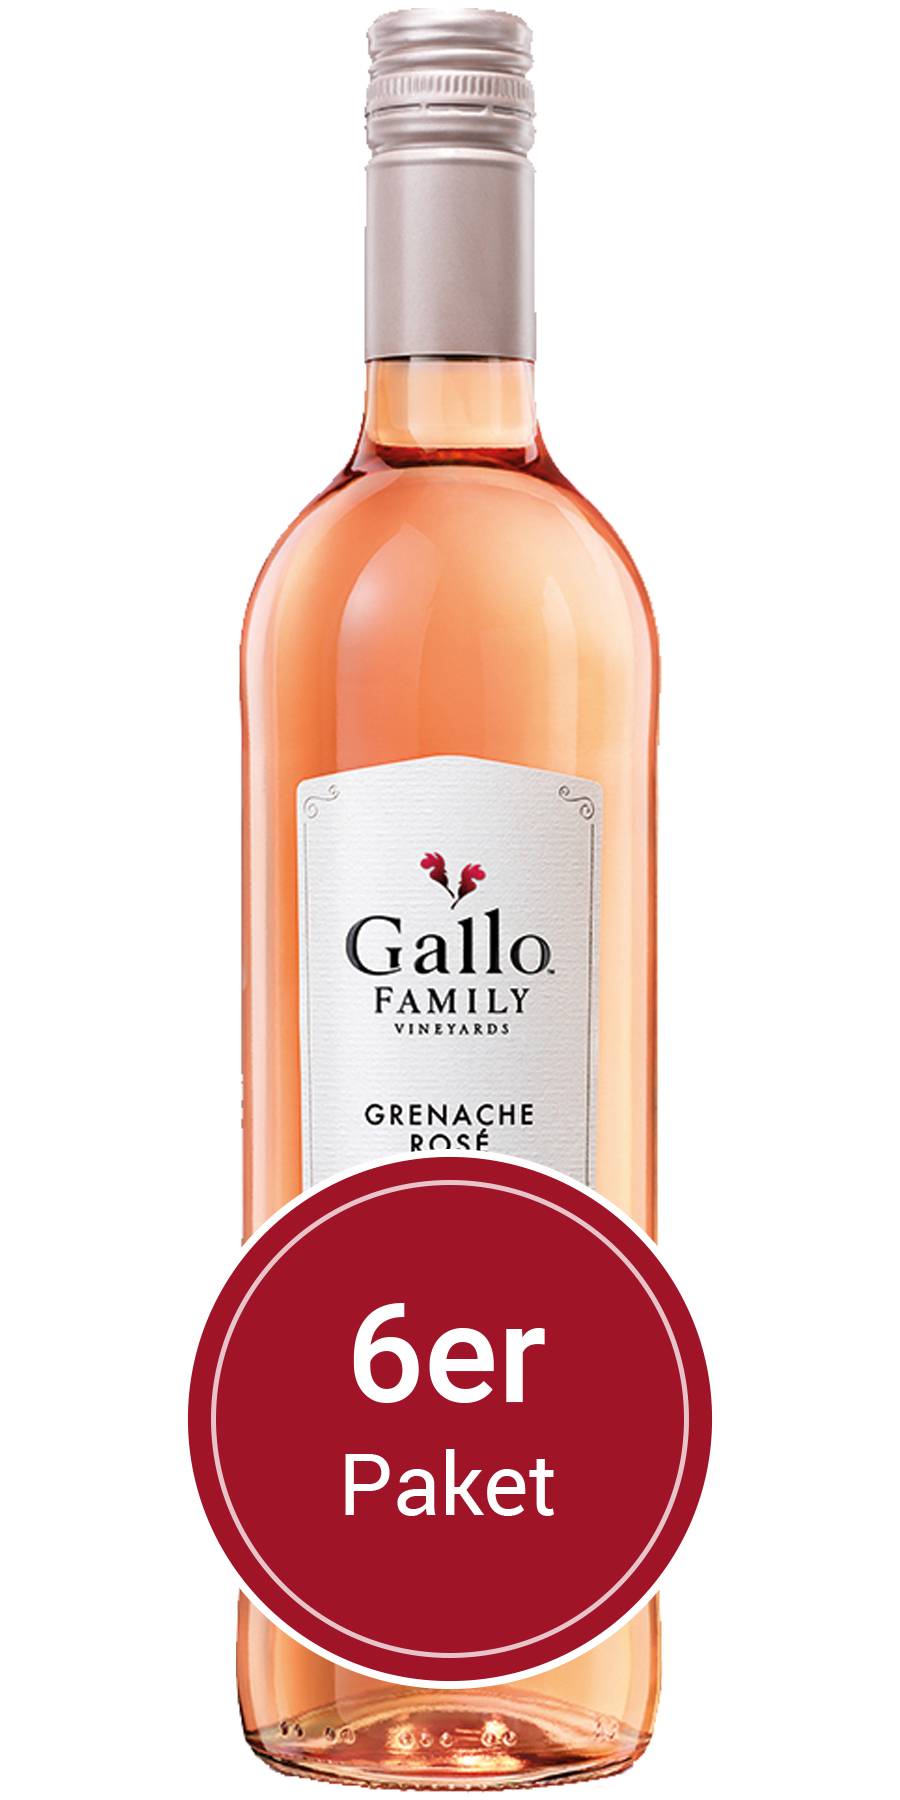 6 Flaschen 0,75 l Vineyards, Gallo Kalifornien Family Rose, Grenache